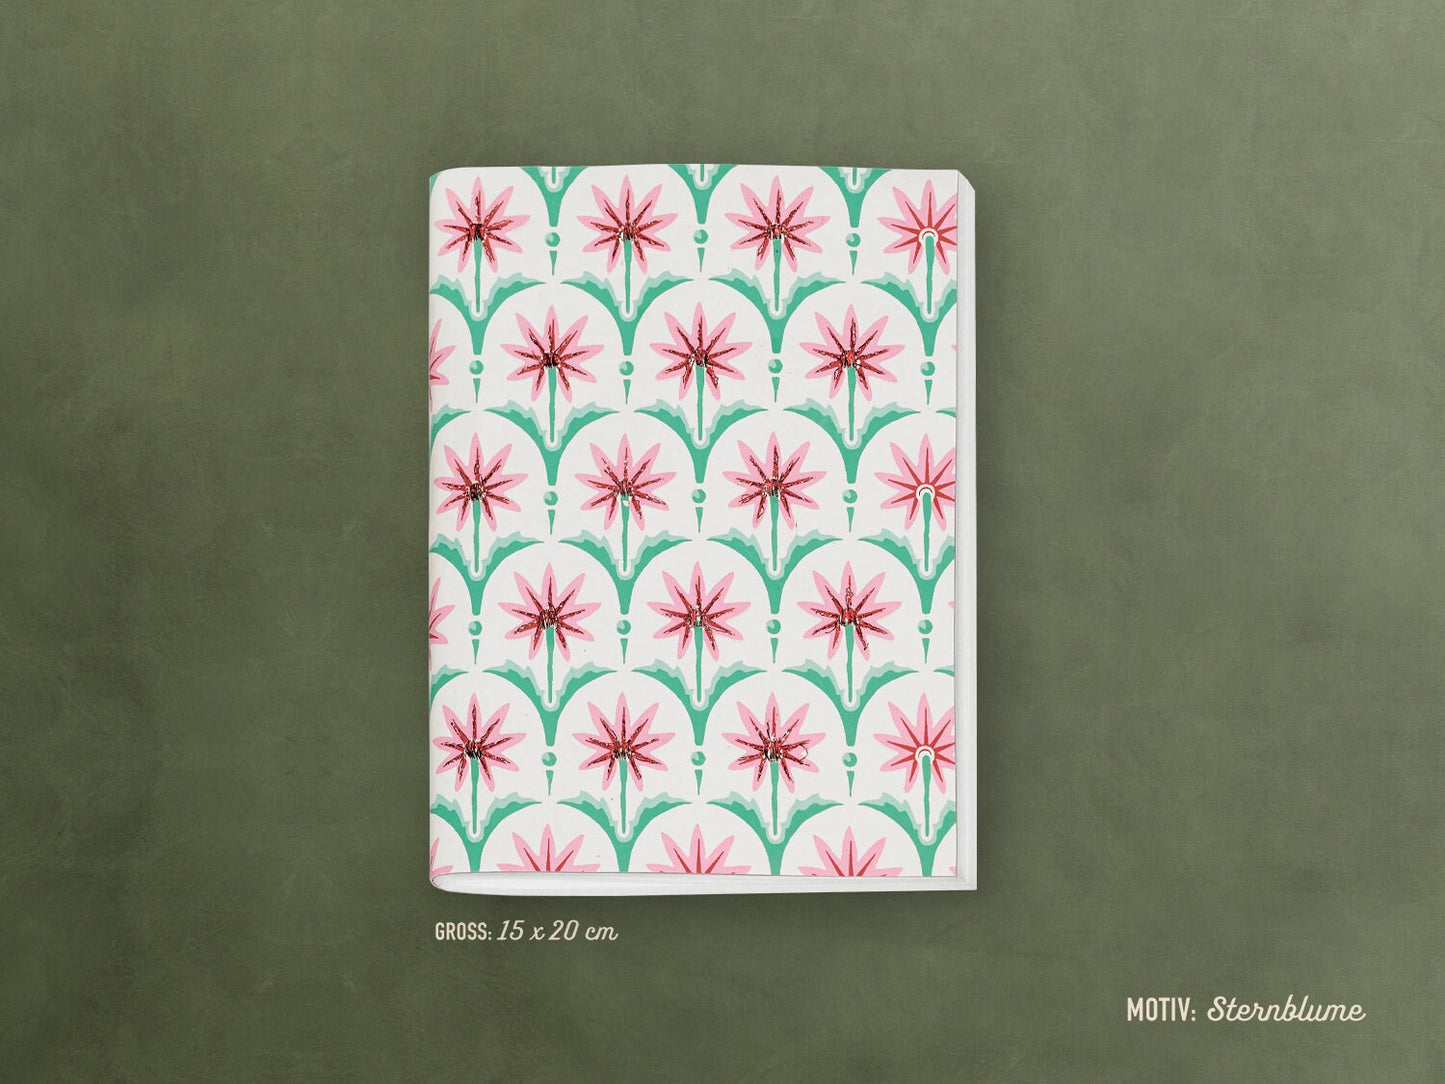 Besticktes Notizheft ›Sternblume‹; edles Journal, Geschenk, Reisebegleiter, bunt, Ornament, Blume